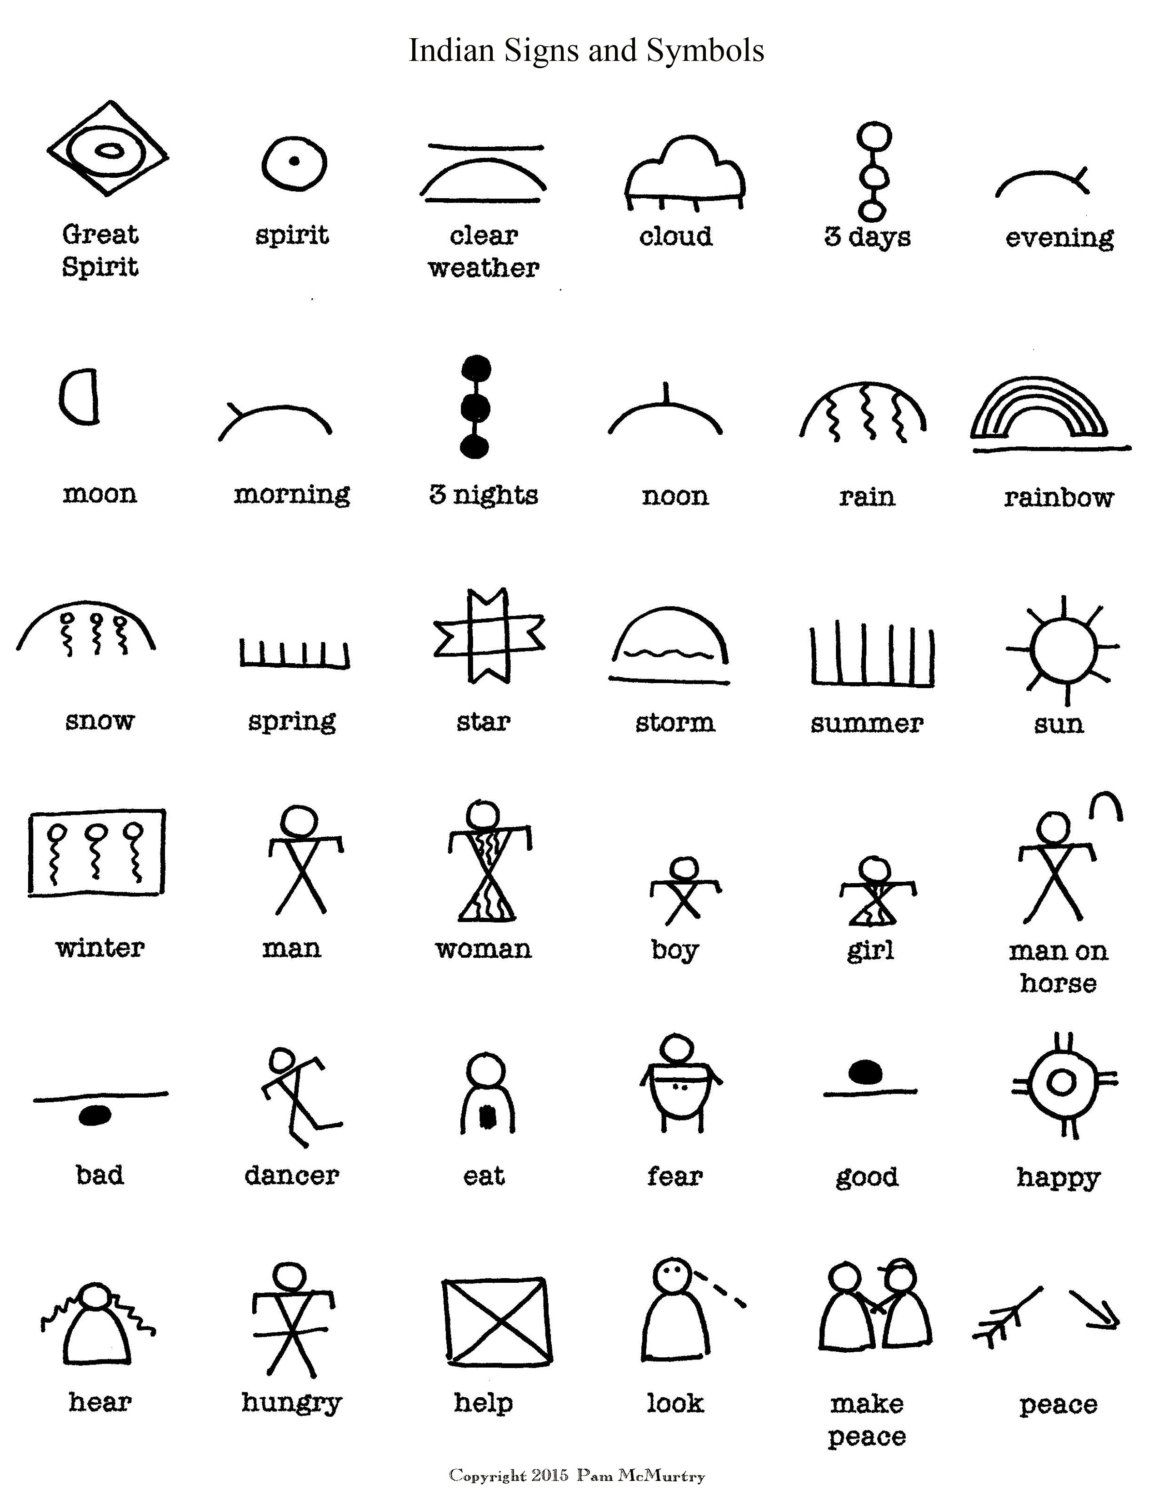 Indian Signs And Symbols Digital Download (Mit Bildern mit Indische Zeichen Und Ihre Bedeutung